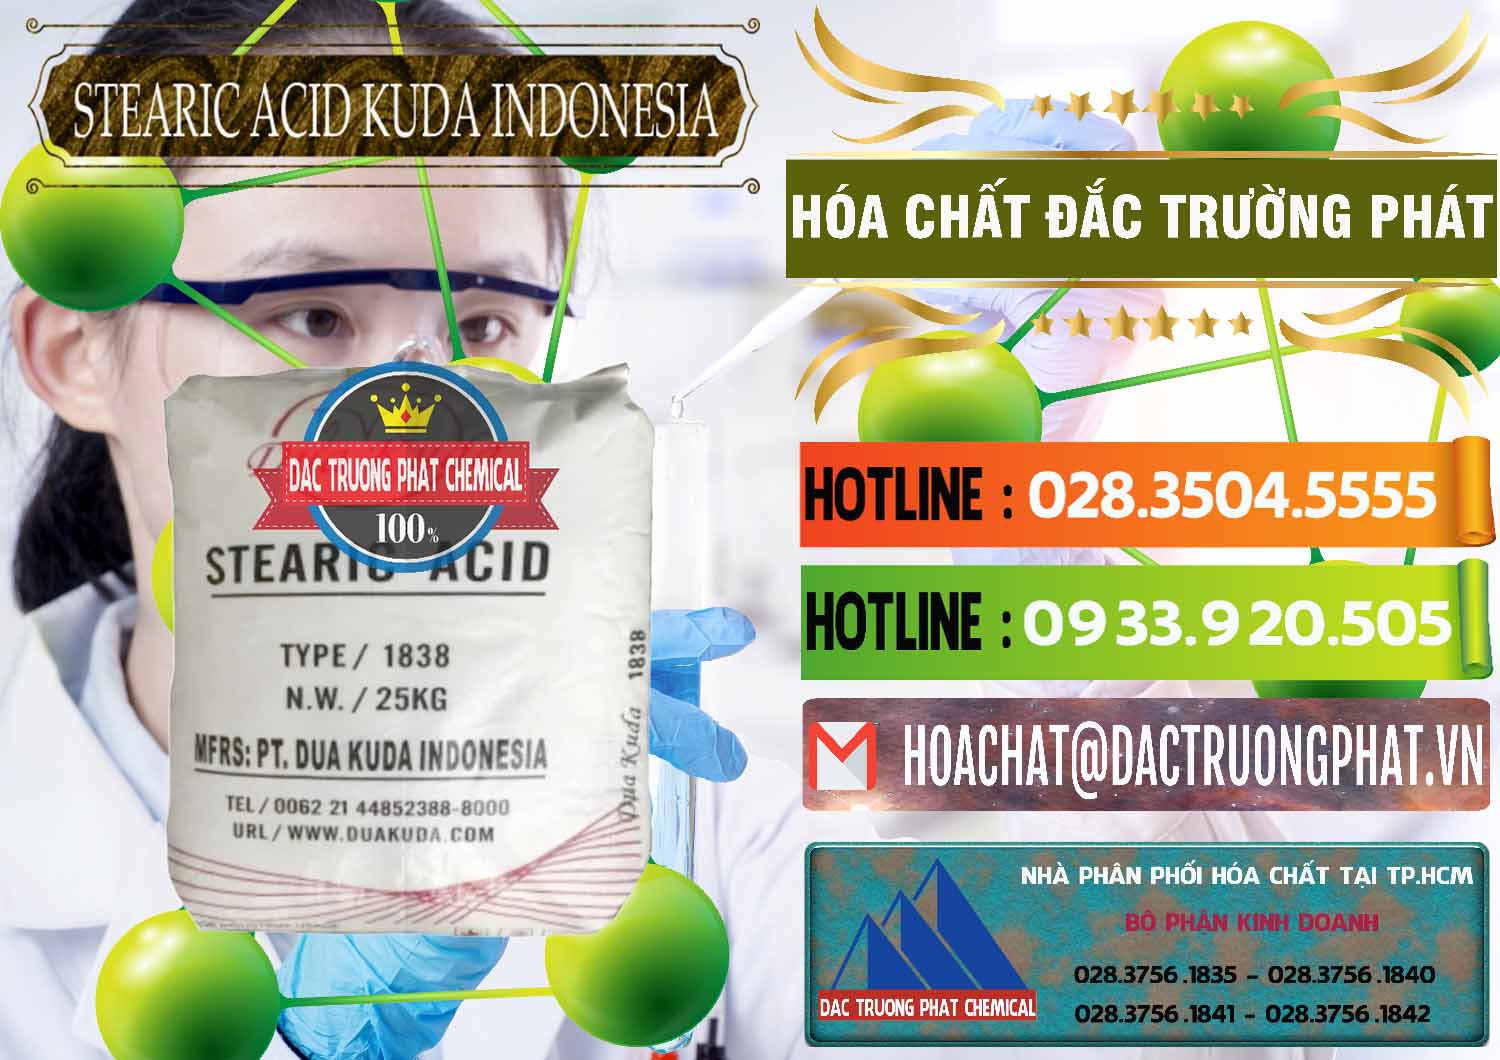 Cty bán - phân phối Axit Stearic - Stearic Acid Dua Kuda Indonesia - 0388 - Công ty kinh doanh và phân phối hóa chất tại TP.HCM - cungcaphoachat.com.vn